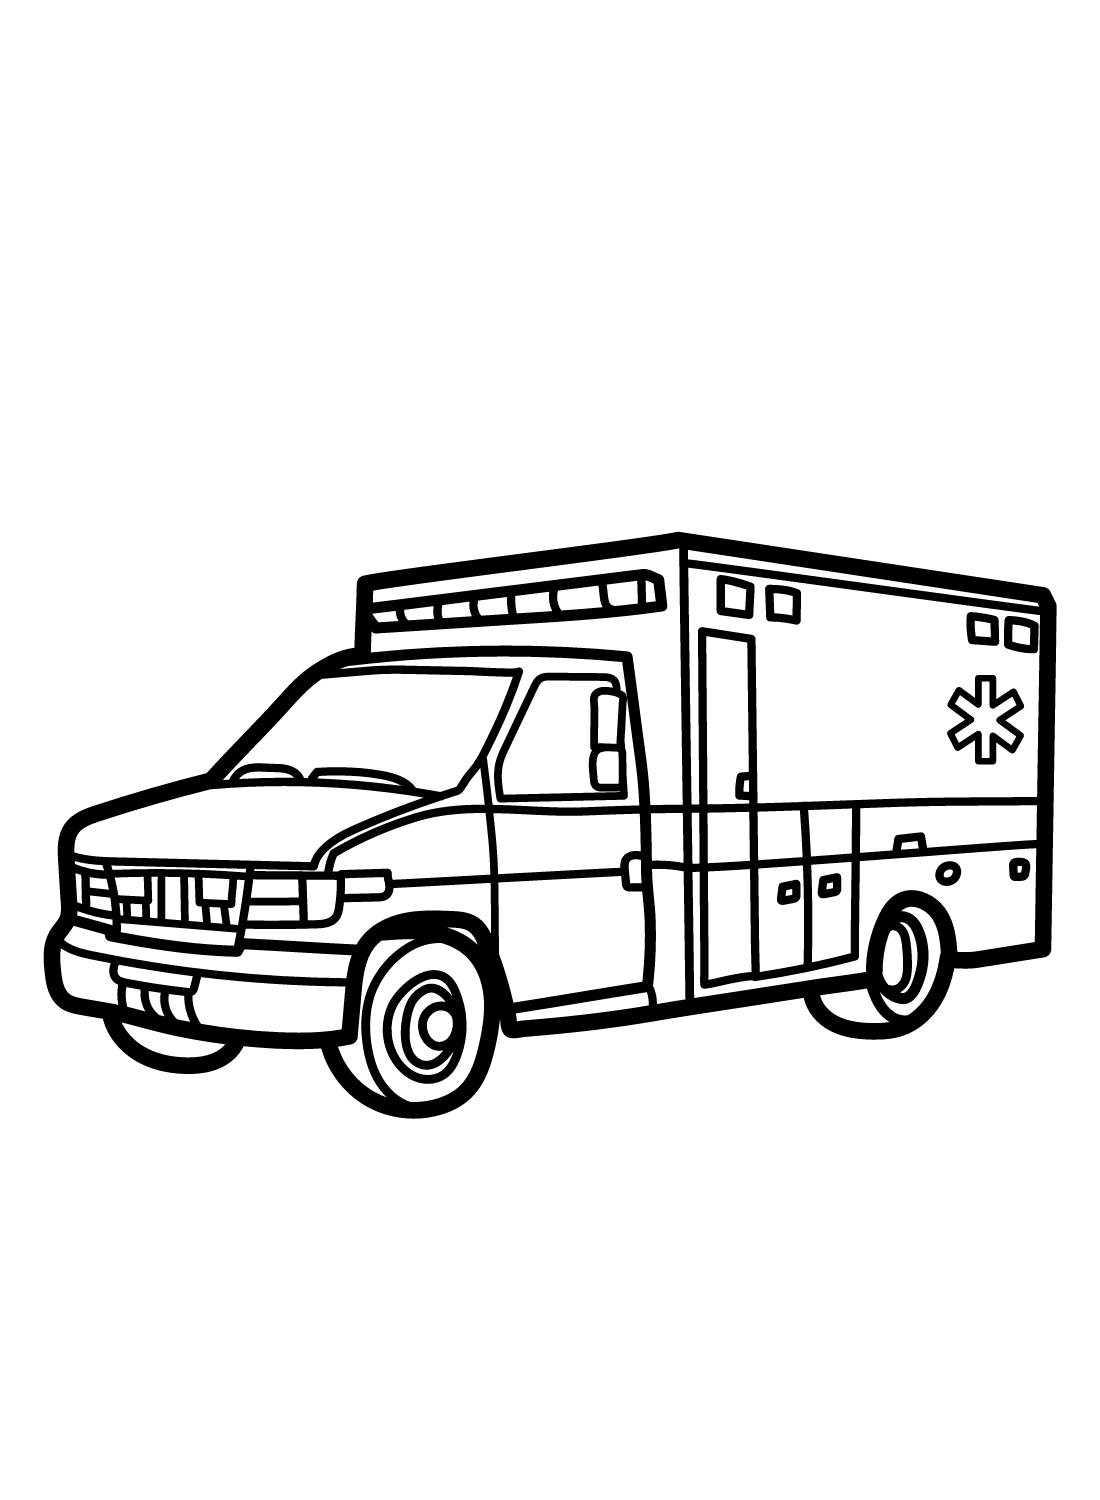 Imagens de ambulância de ambulância